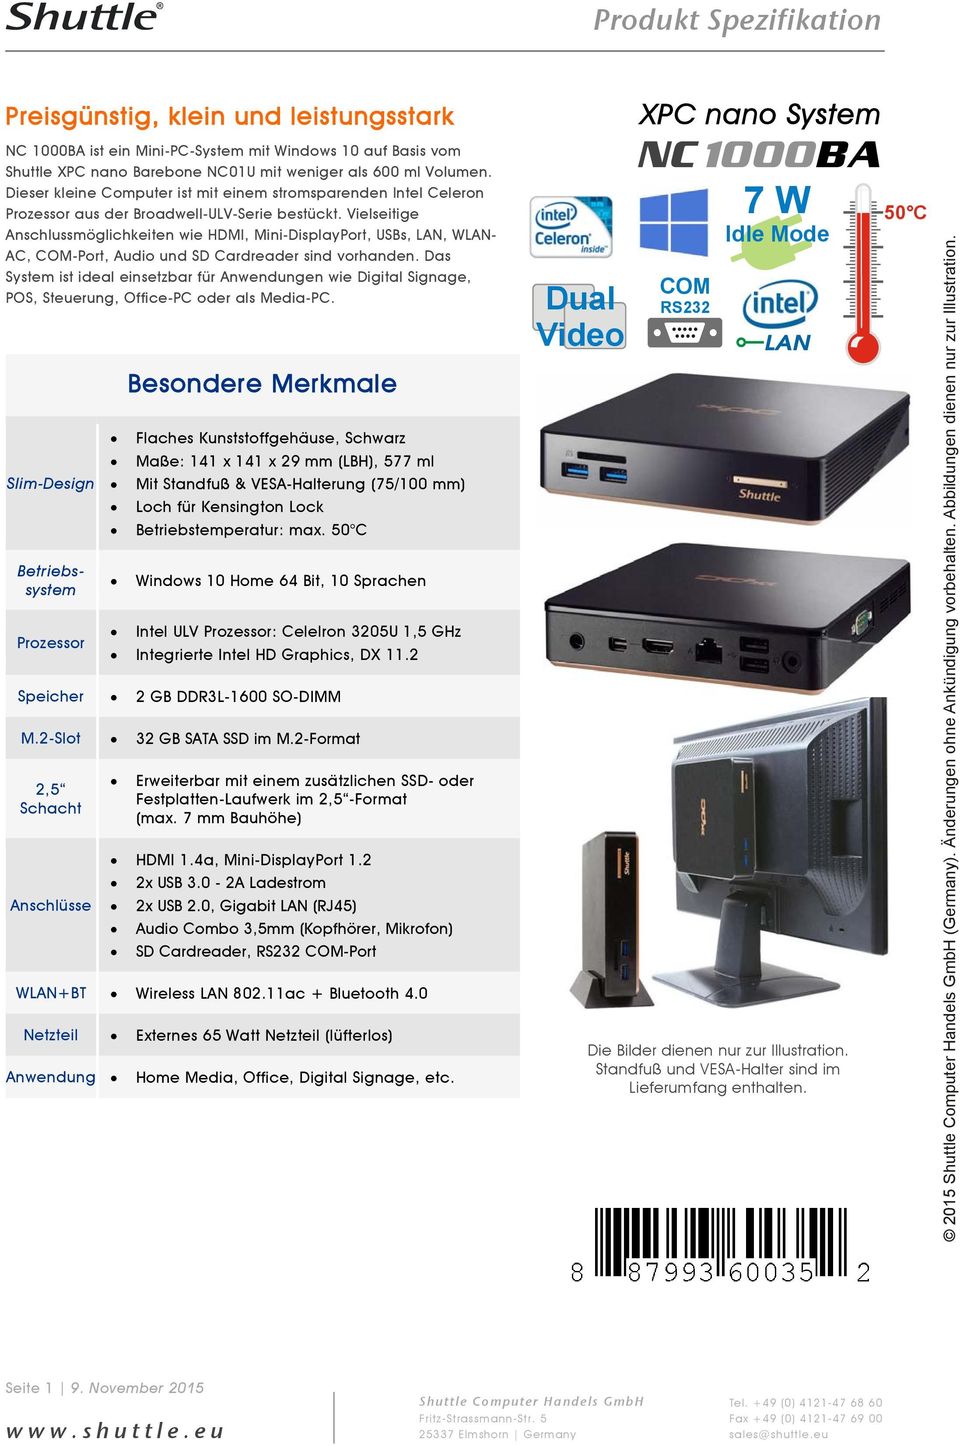 Vielseitige Anschlussmöglichkeiten wie HDMI, Mini-DisplayPort, USBs, LAN, WLAN- AC, COM-Port, Audio und SD Cardreader sind vorhanden.